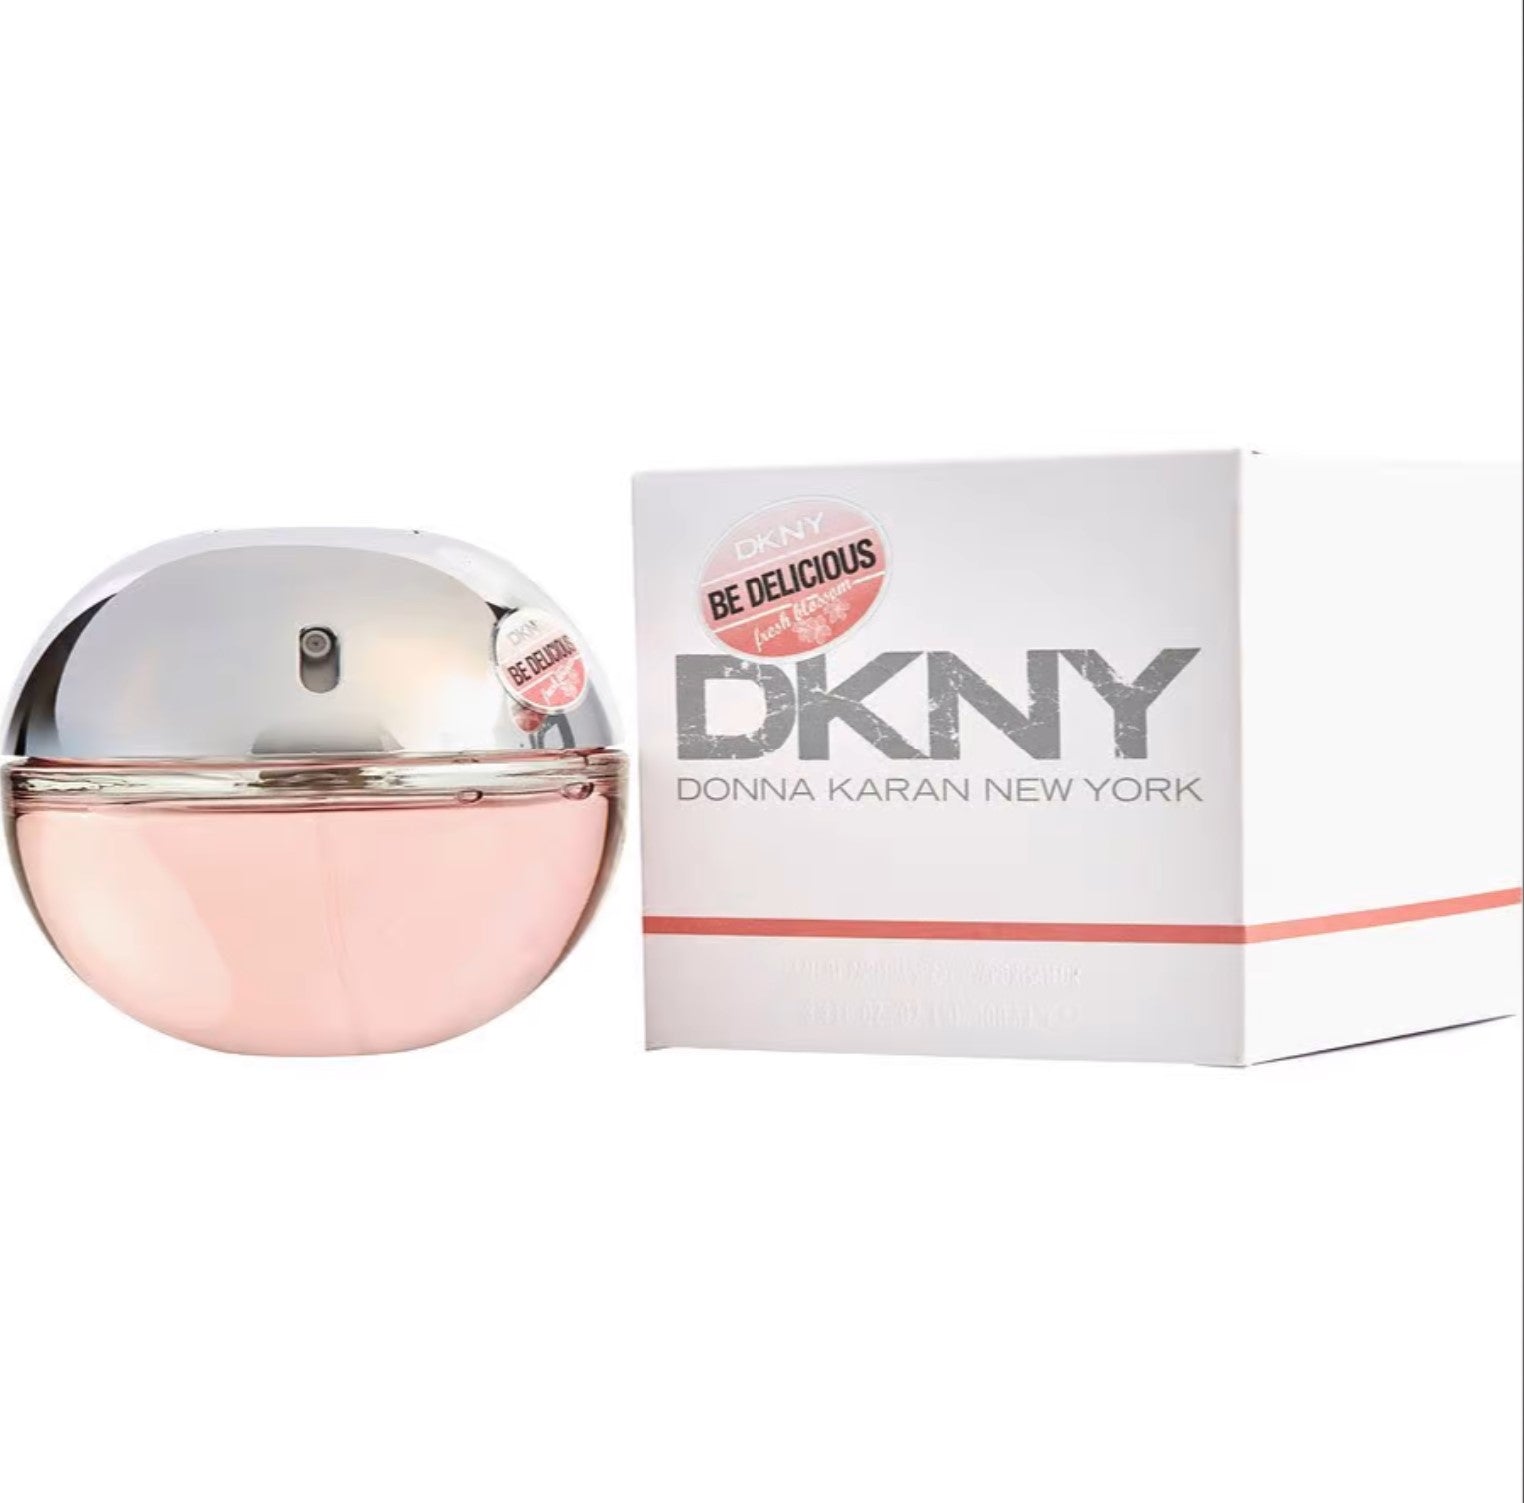 Туалетная вода дон. DKNY духи Fresh Blossom. DKNY be delicious Fresh Blossom (Donna Karan) 100мл. Be delicious Fresh (Donna Karan) 100мл. Туалетная вода Донна Каран Нью-Йорк.